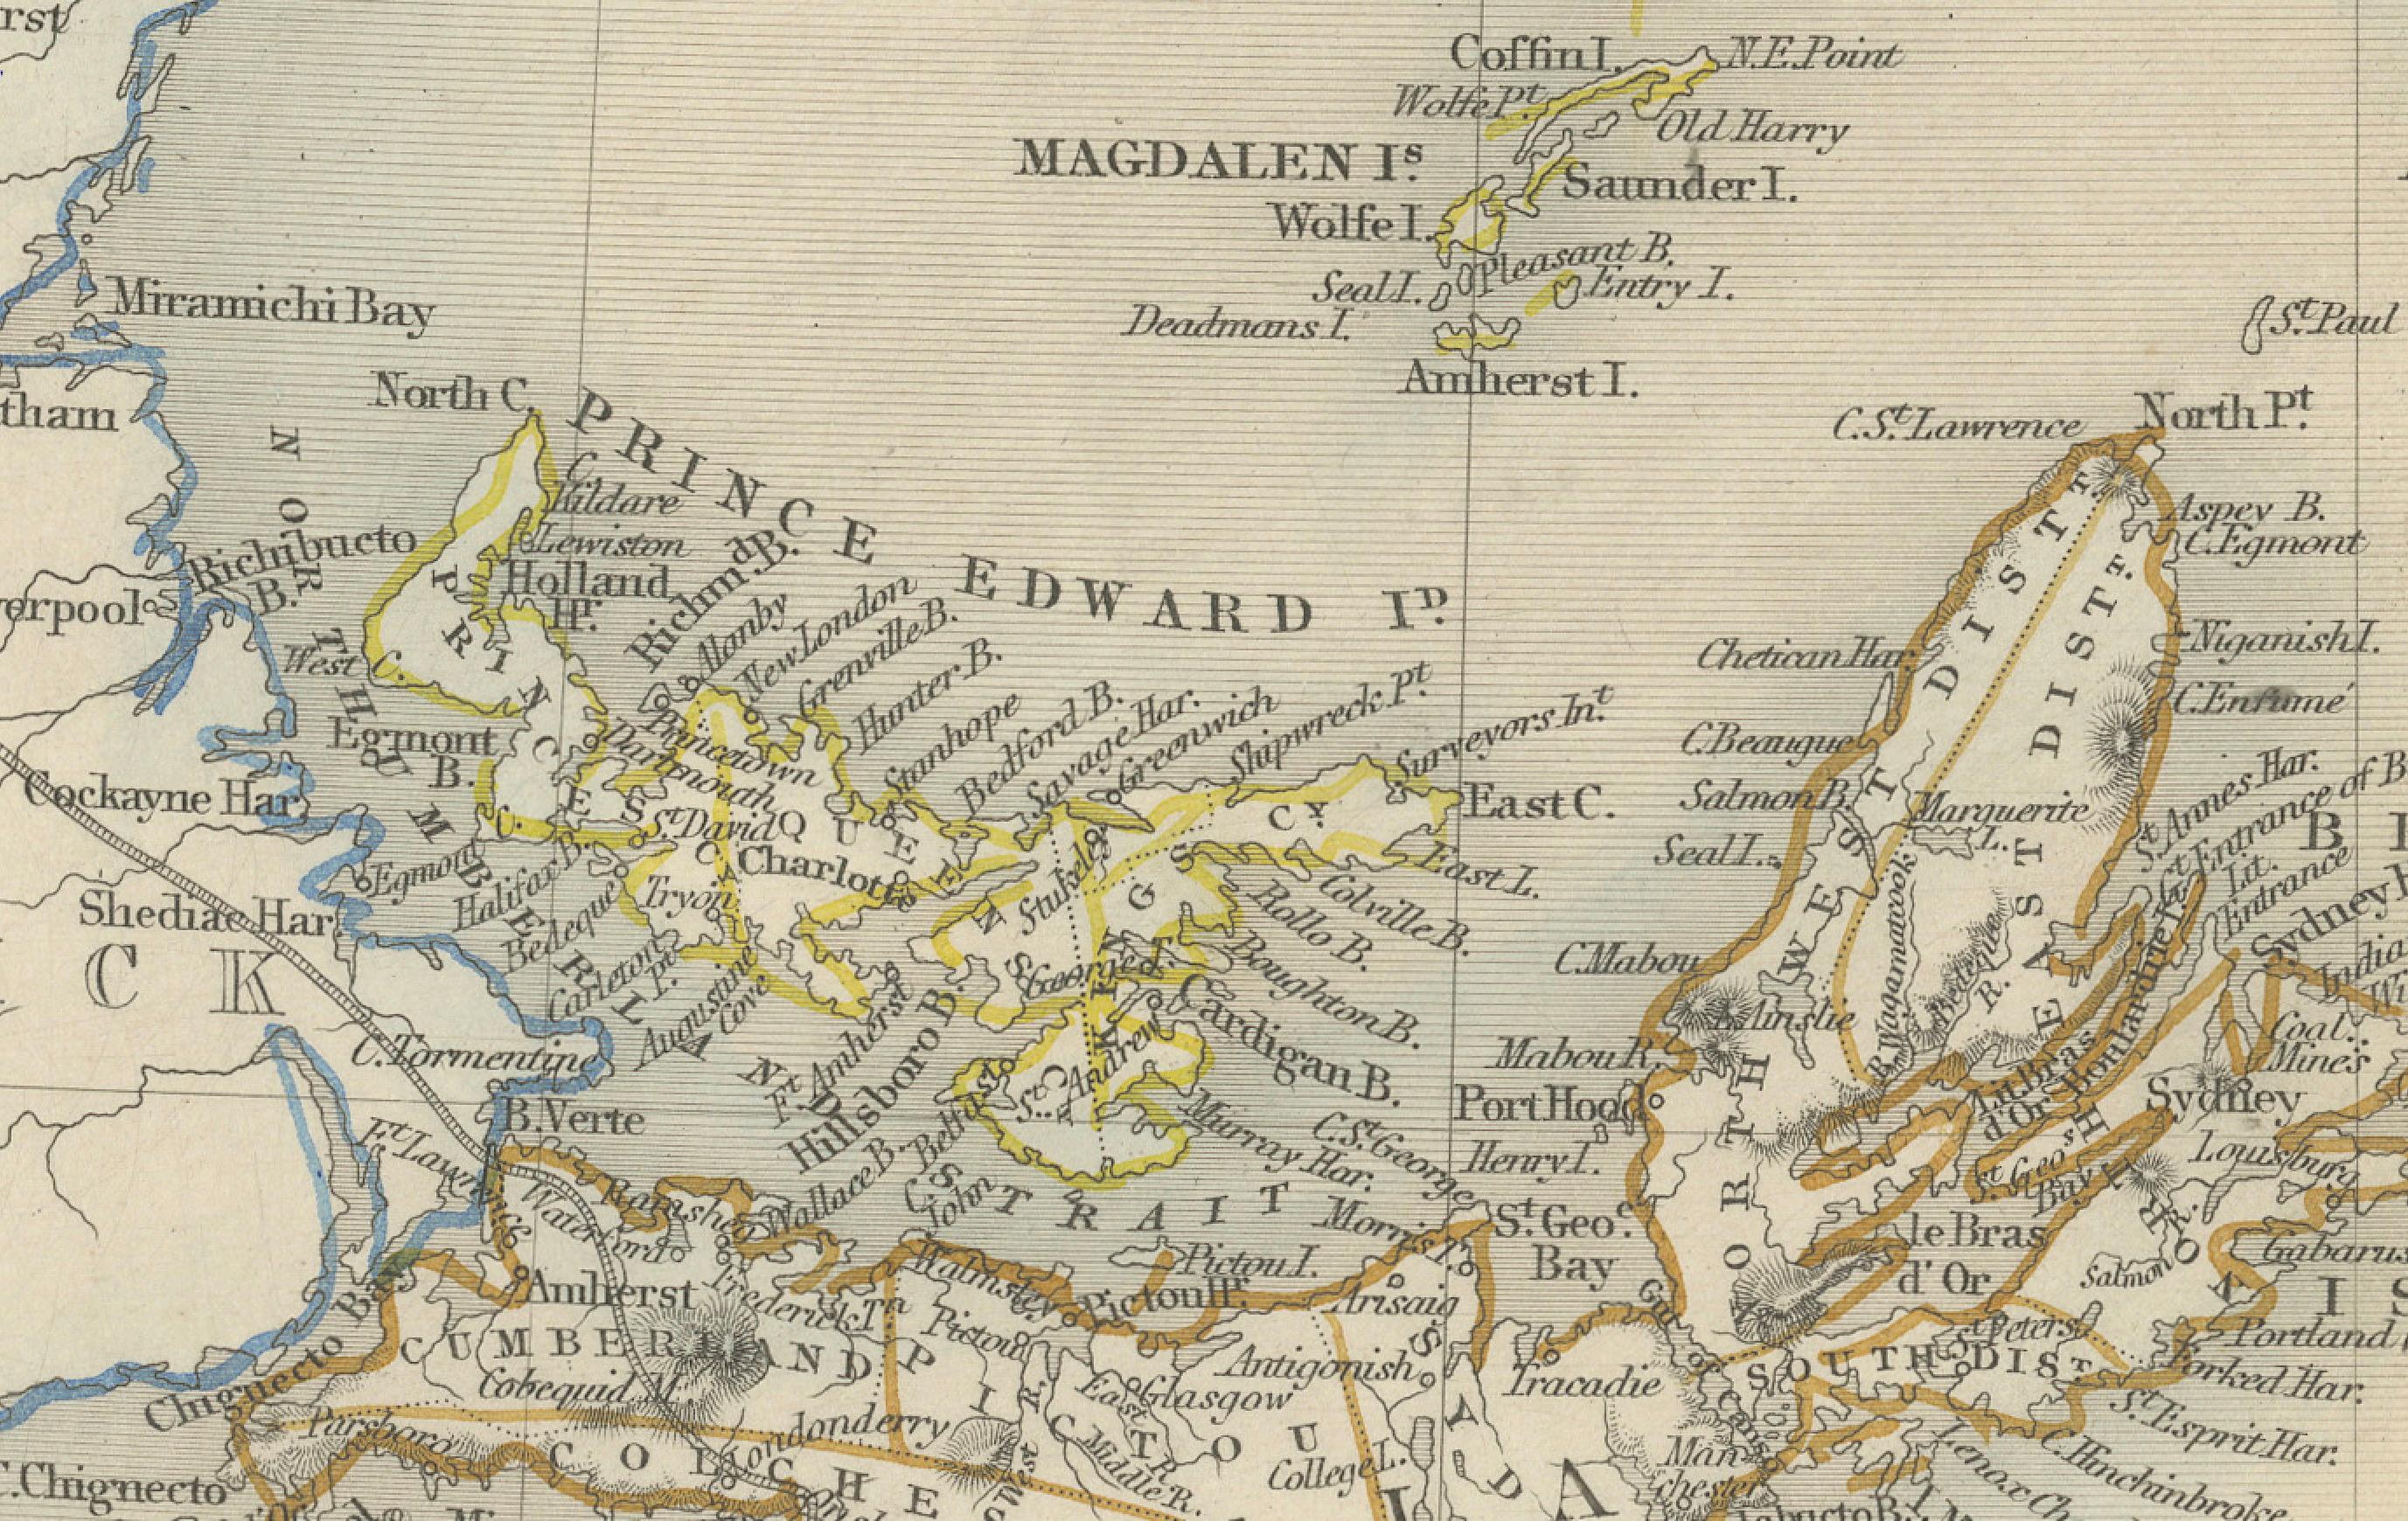 Die Karte gehört zu einer Serie von John Tallis & Company, die für ihre Karten aus der Mitte des 19. Jahrhunderts bekannt sind. Diese Karte zeigt die Regionen Nova Scotia und Neufundland und ist wie die anderen Karten aus der Serie 